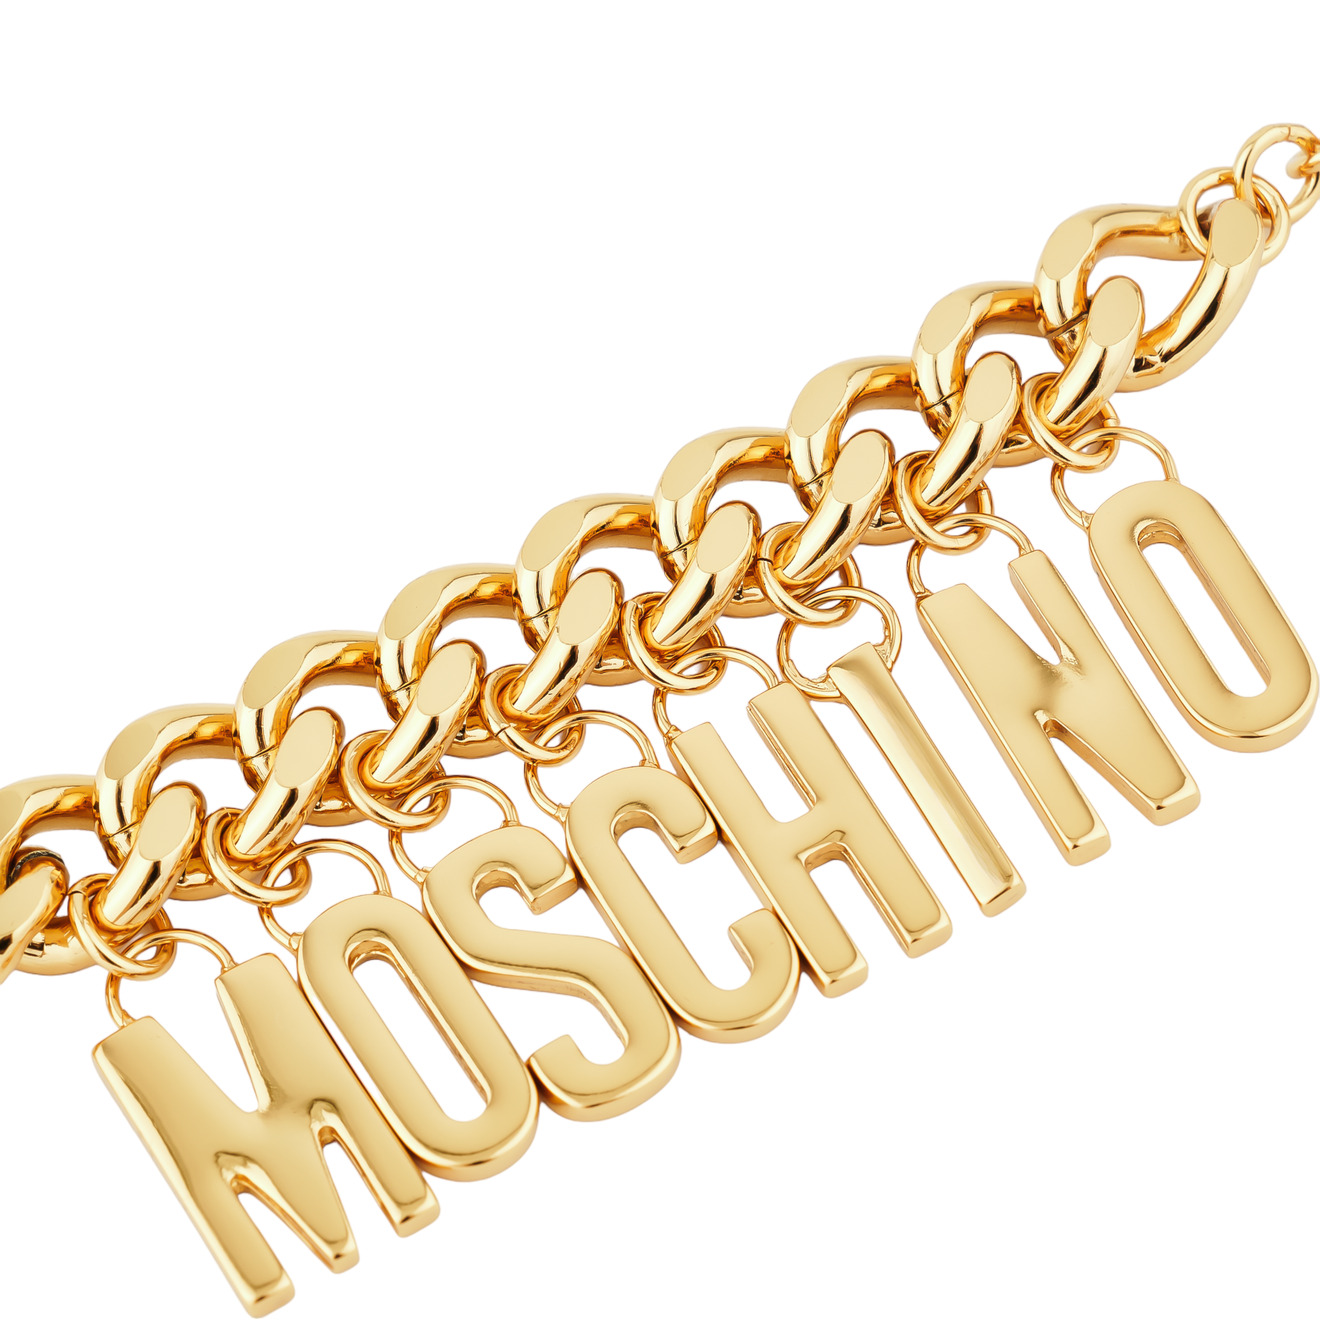 Moschino Позолоченный браслет-цепь с глянцевыми буквами бренда prosto jewlry позолоченный объёмный браслет цепь из серебра с круглыми звеньями